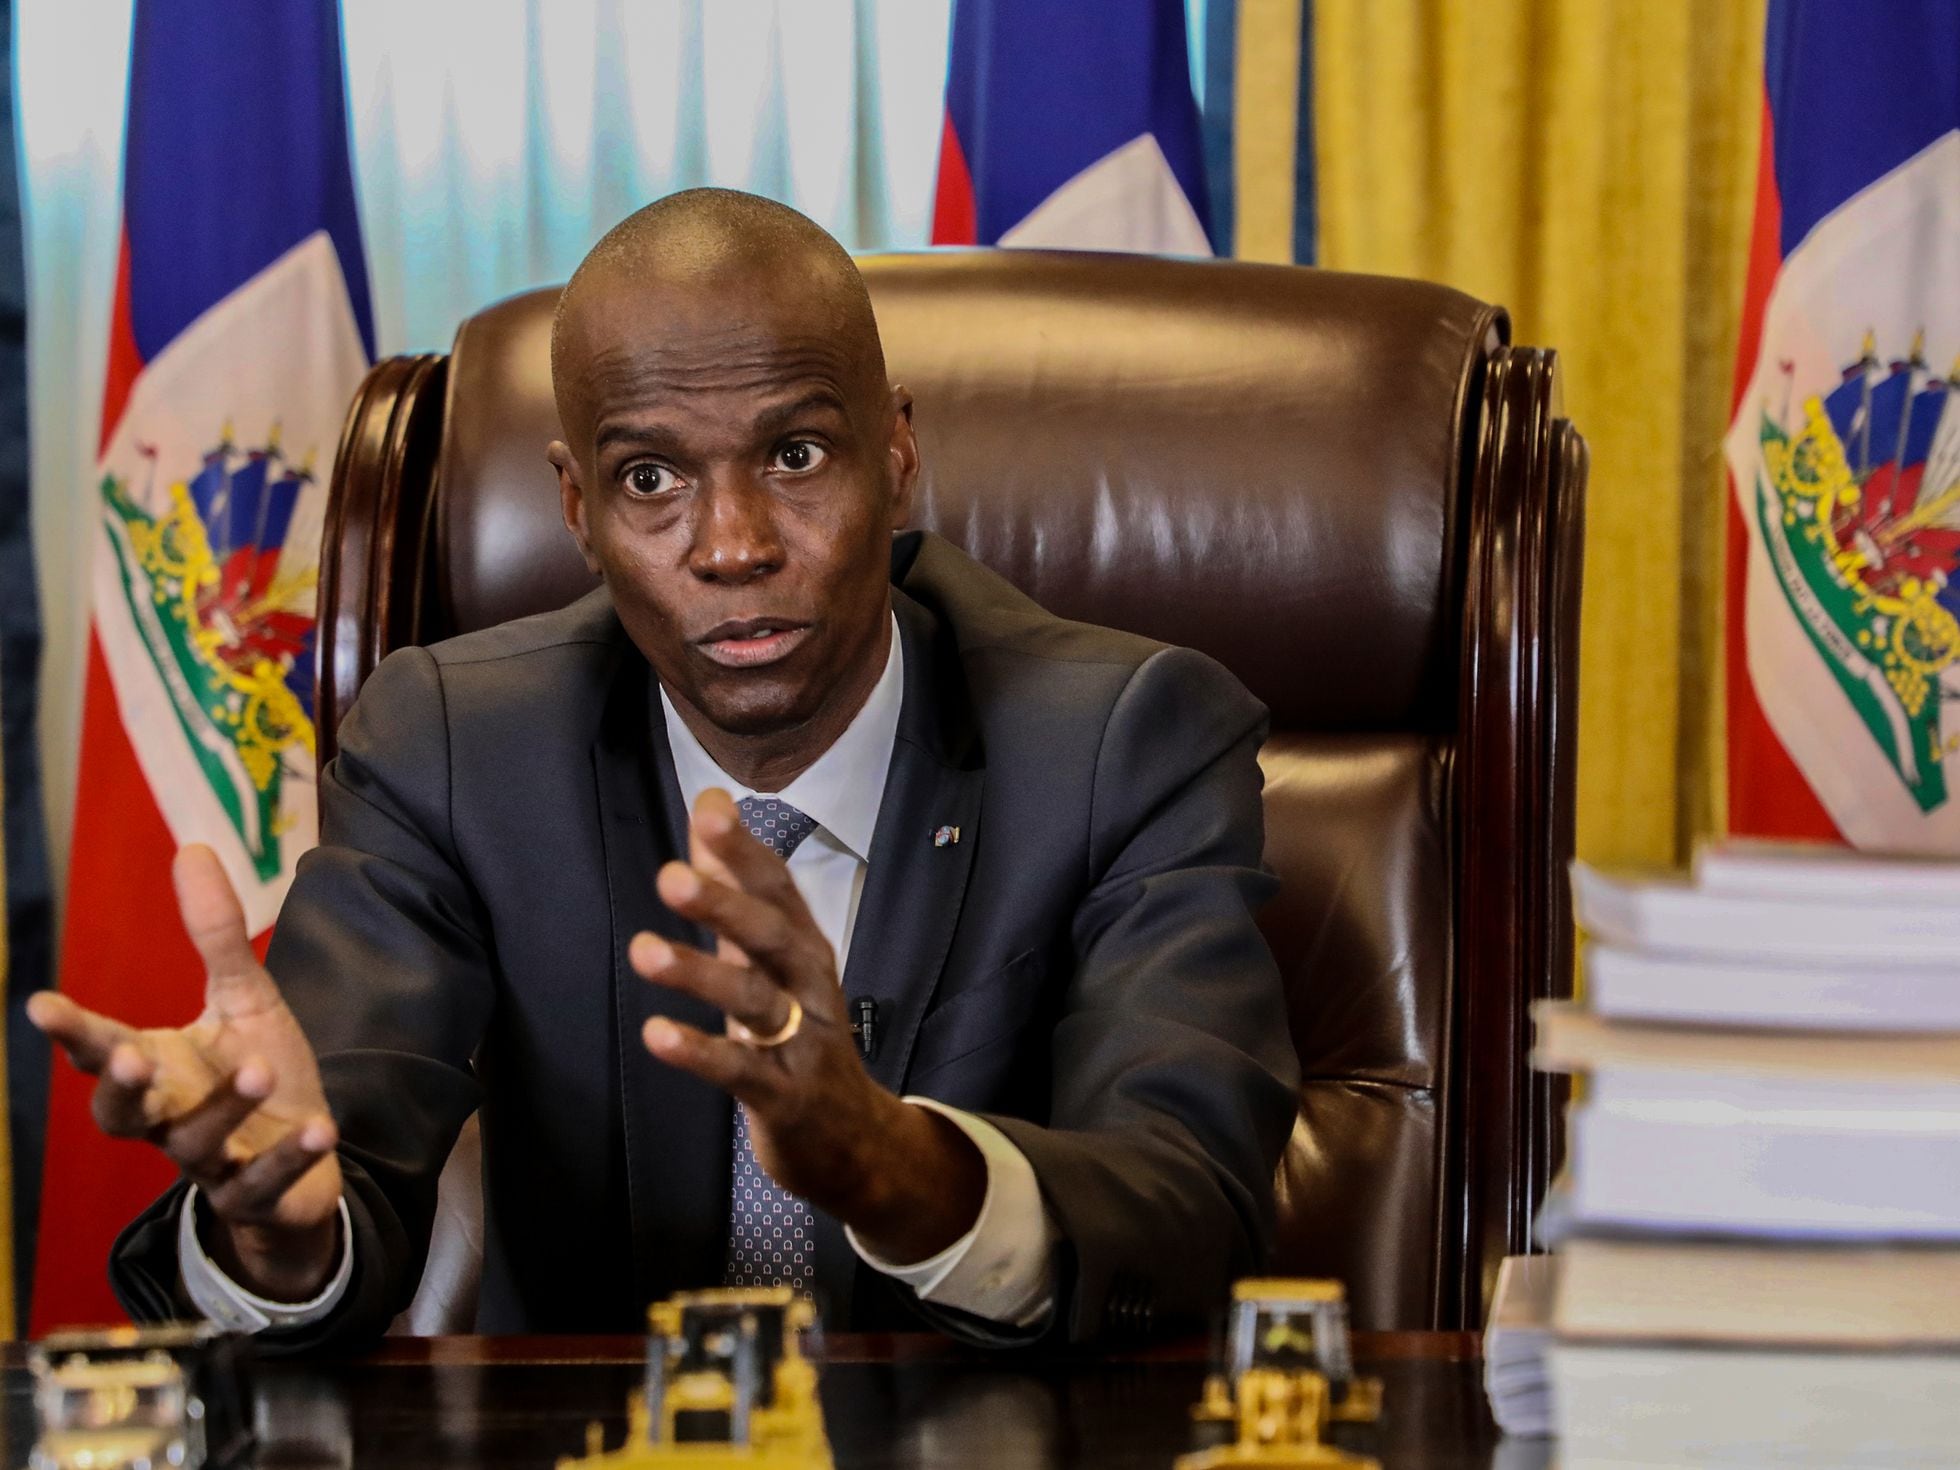 El presidente de Haití, Jovenel Moïse, asesinado a tiros en su domicilio | Internacional | EL PAÍS